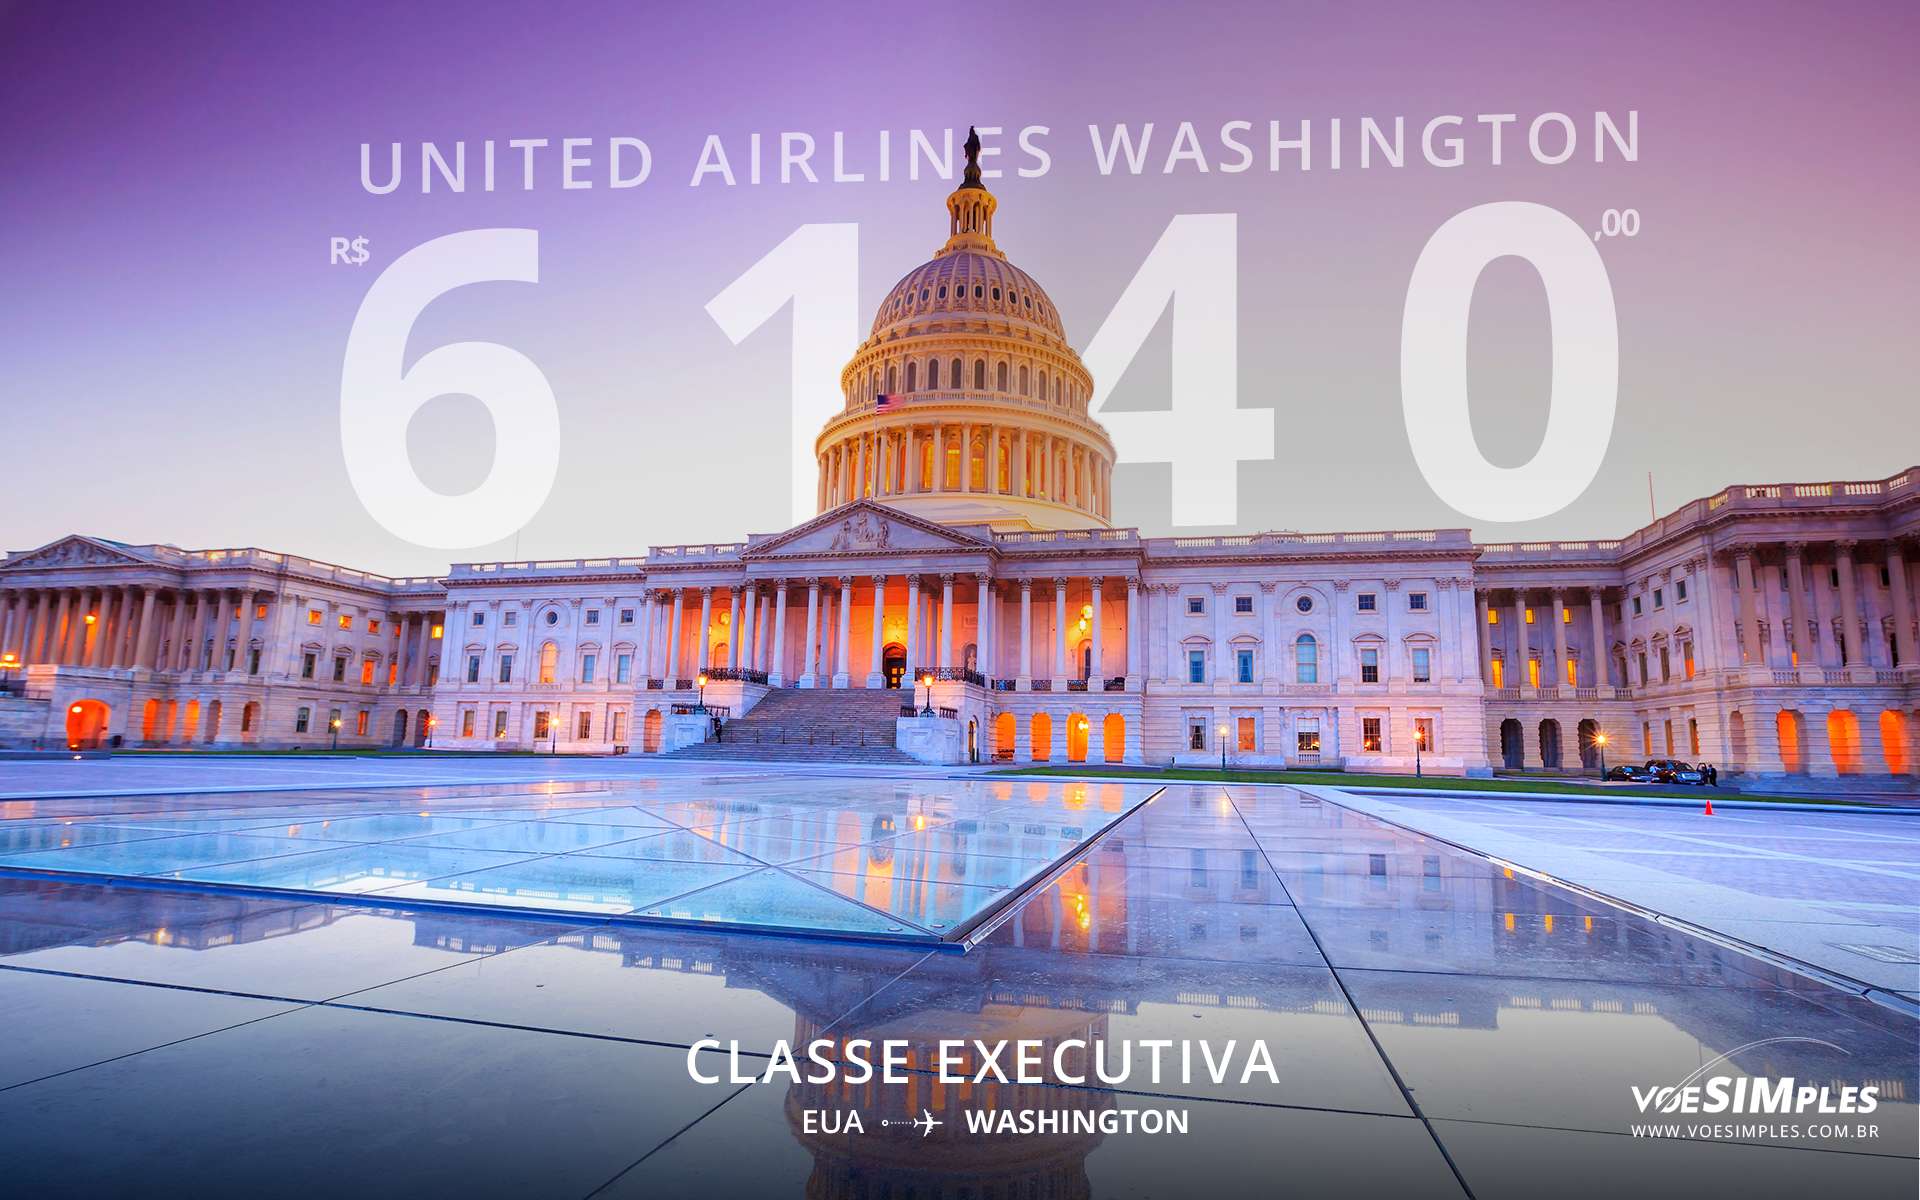 classe executiva United Airlines